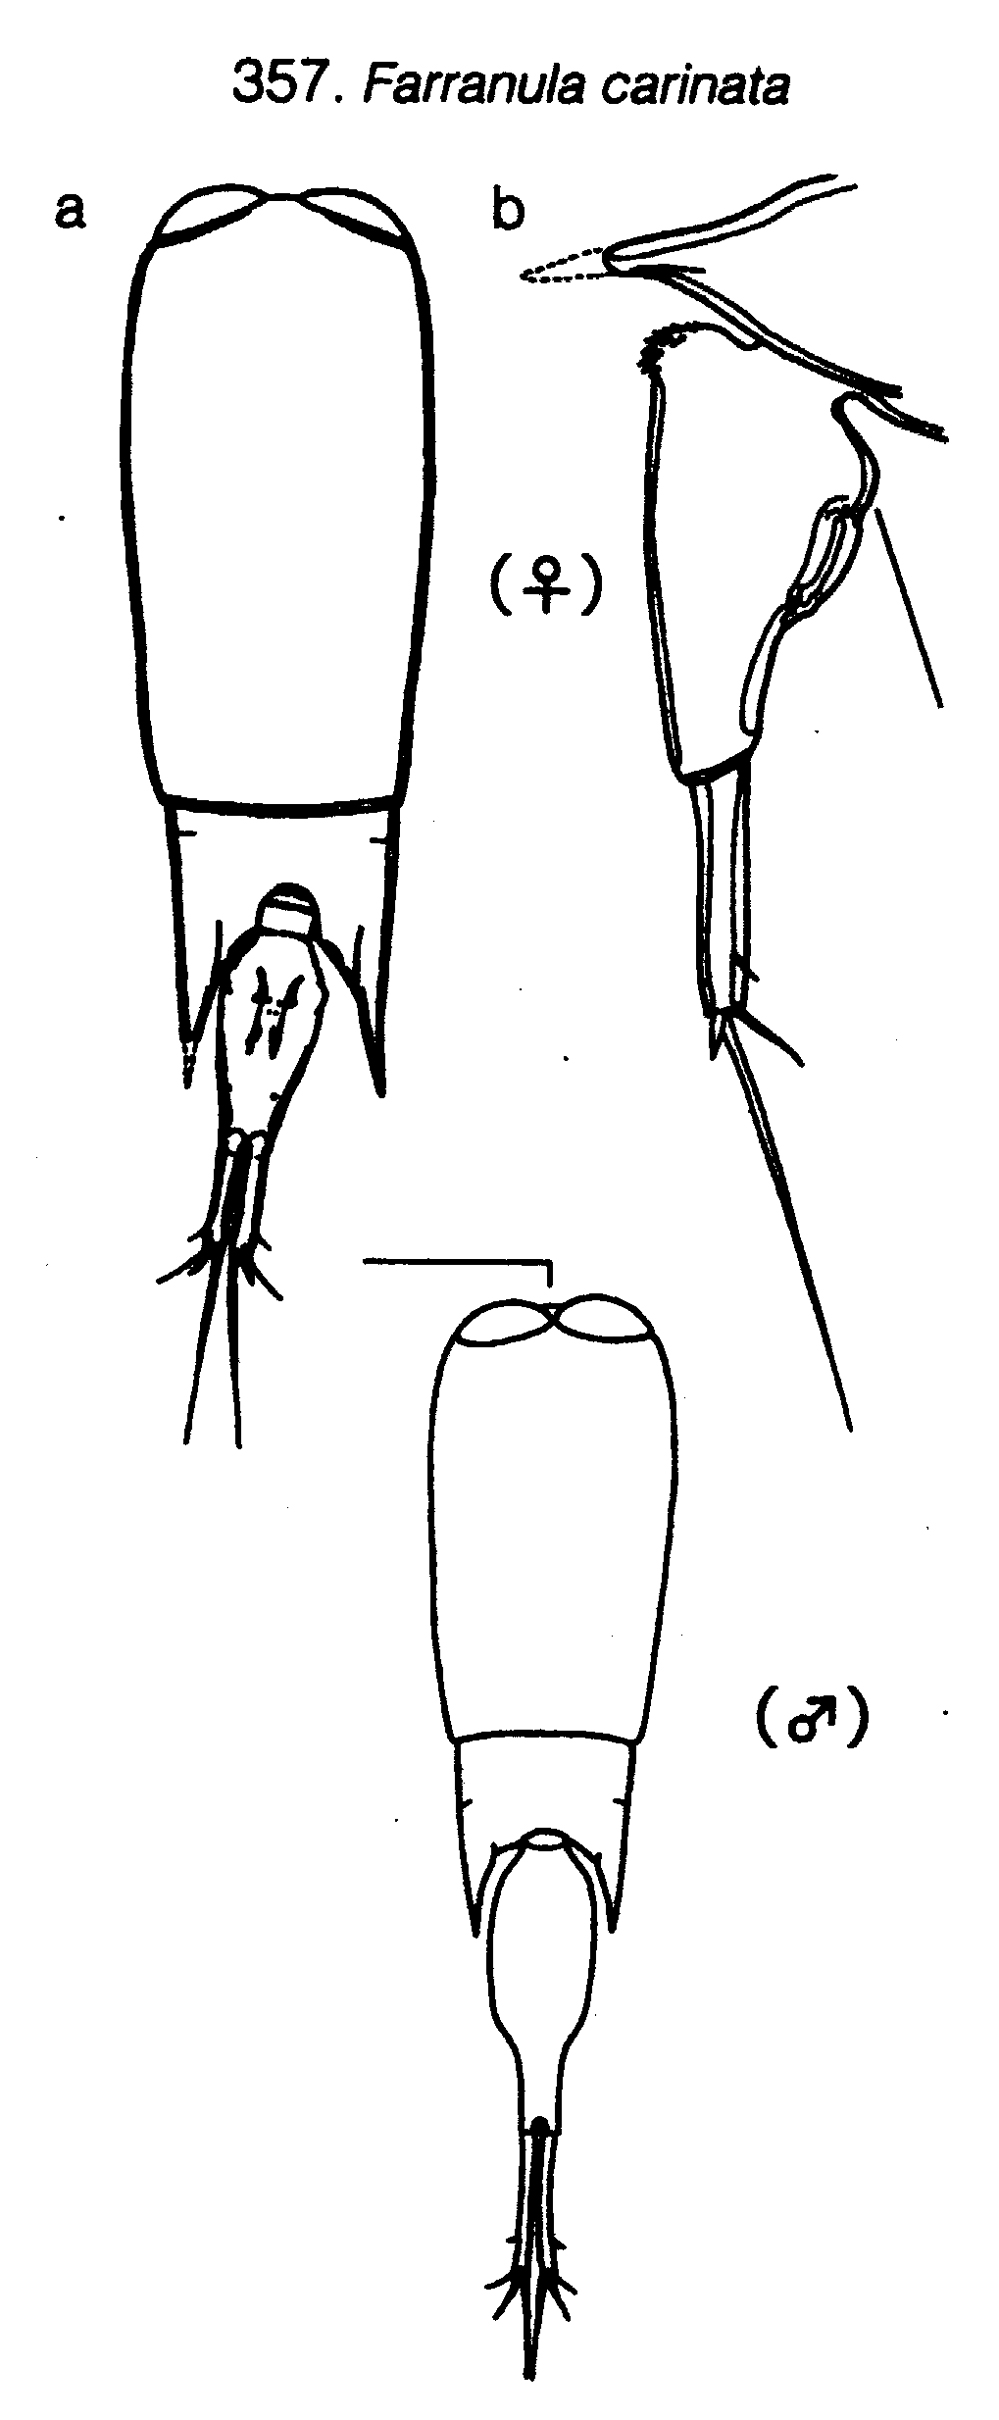 Espce Farranula carinata - Planche 16 de figures morphologiques